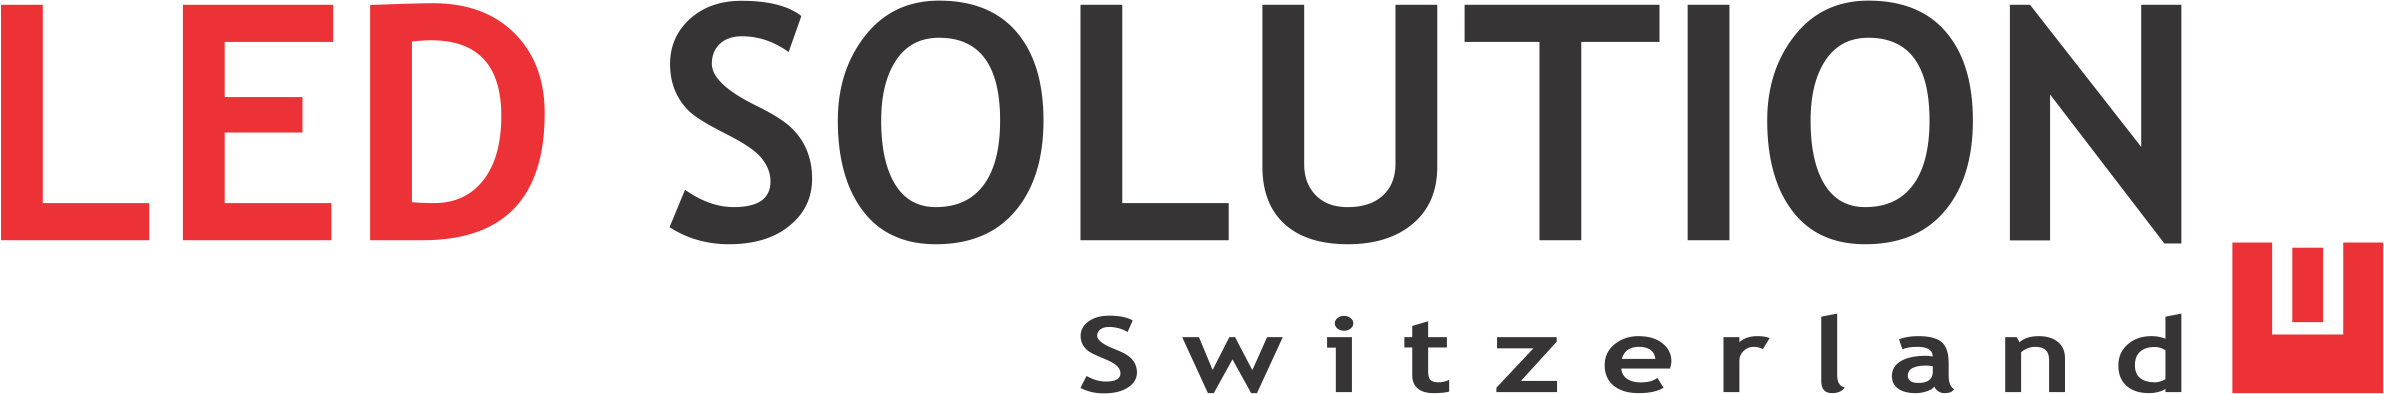 LED SOLUTION Switzerland GmbH